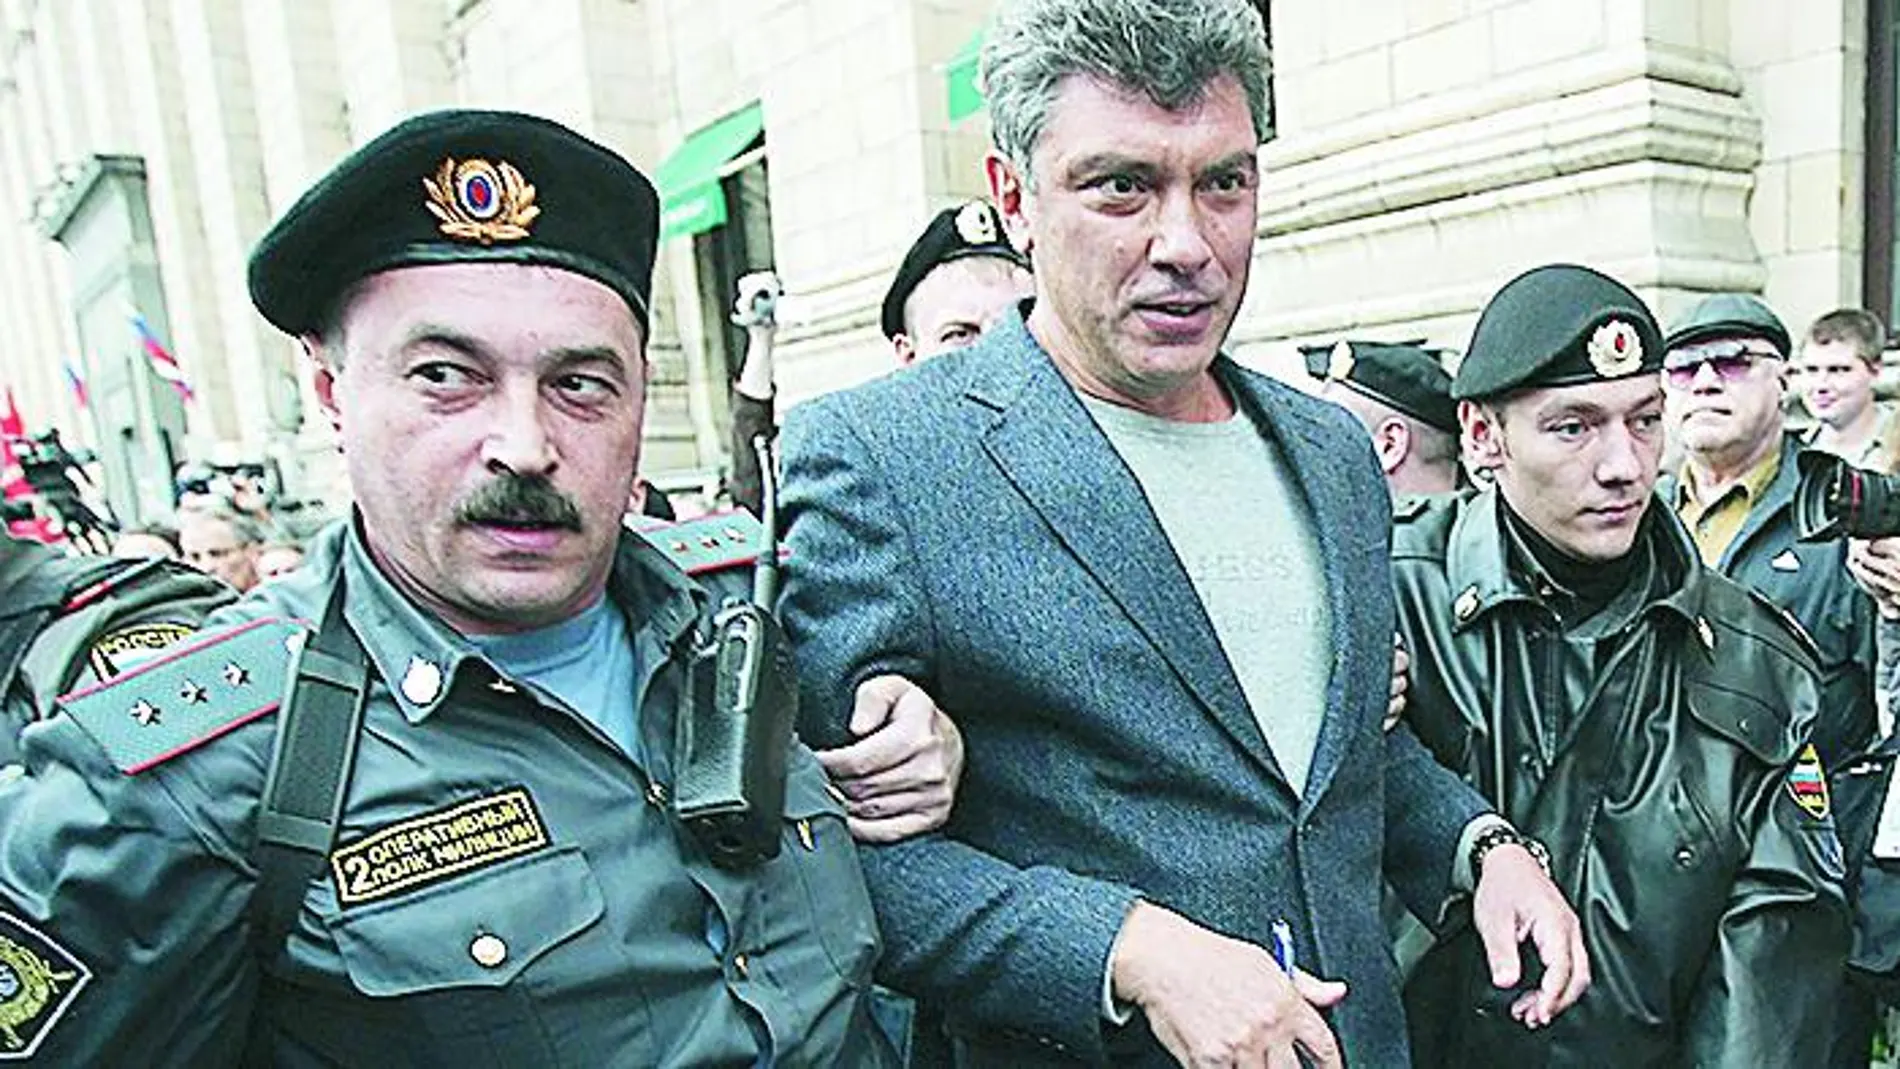 CONOCIDO POR LAS FUERZAS DEL ORDEN. En agosto de 2010, Nemtsov fue detenido durante una protesta en Moscú